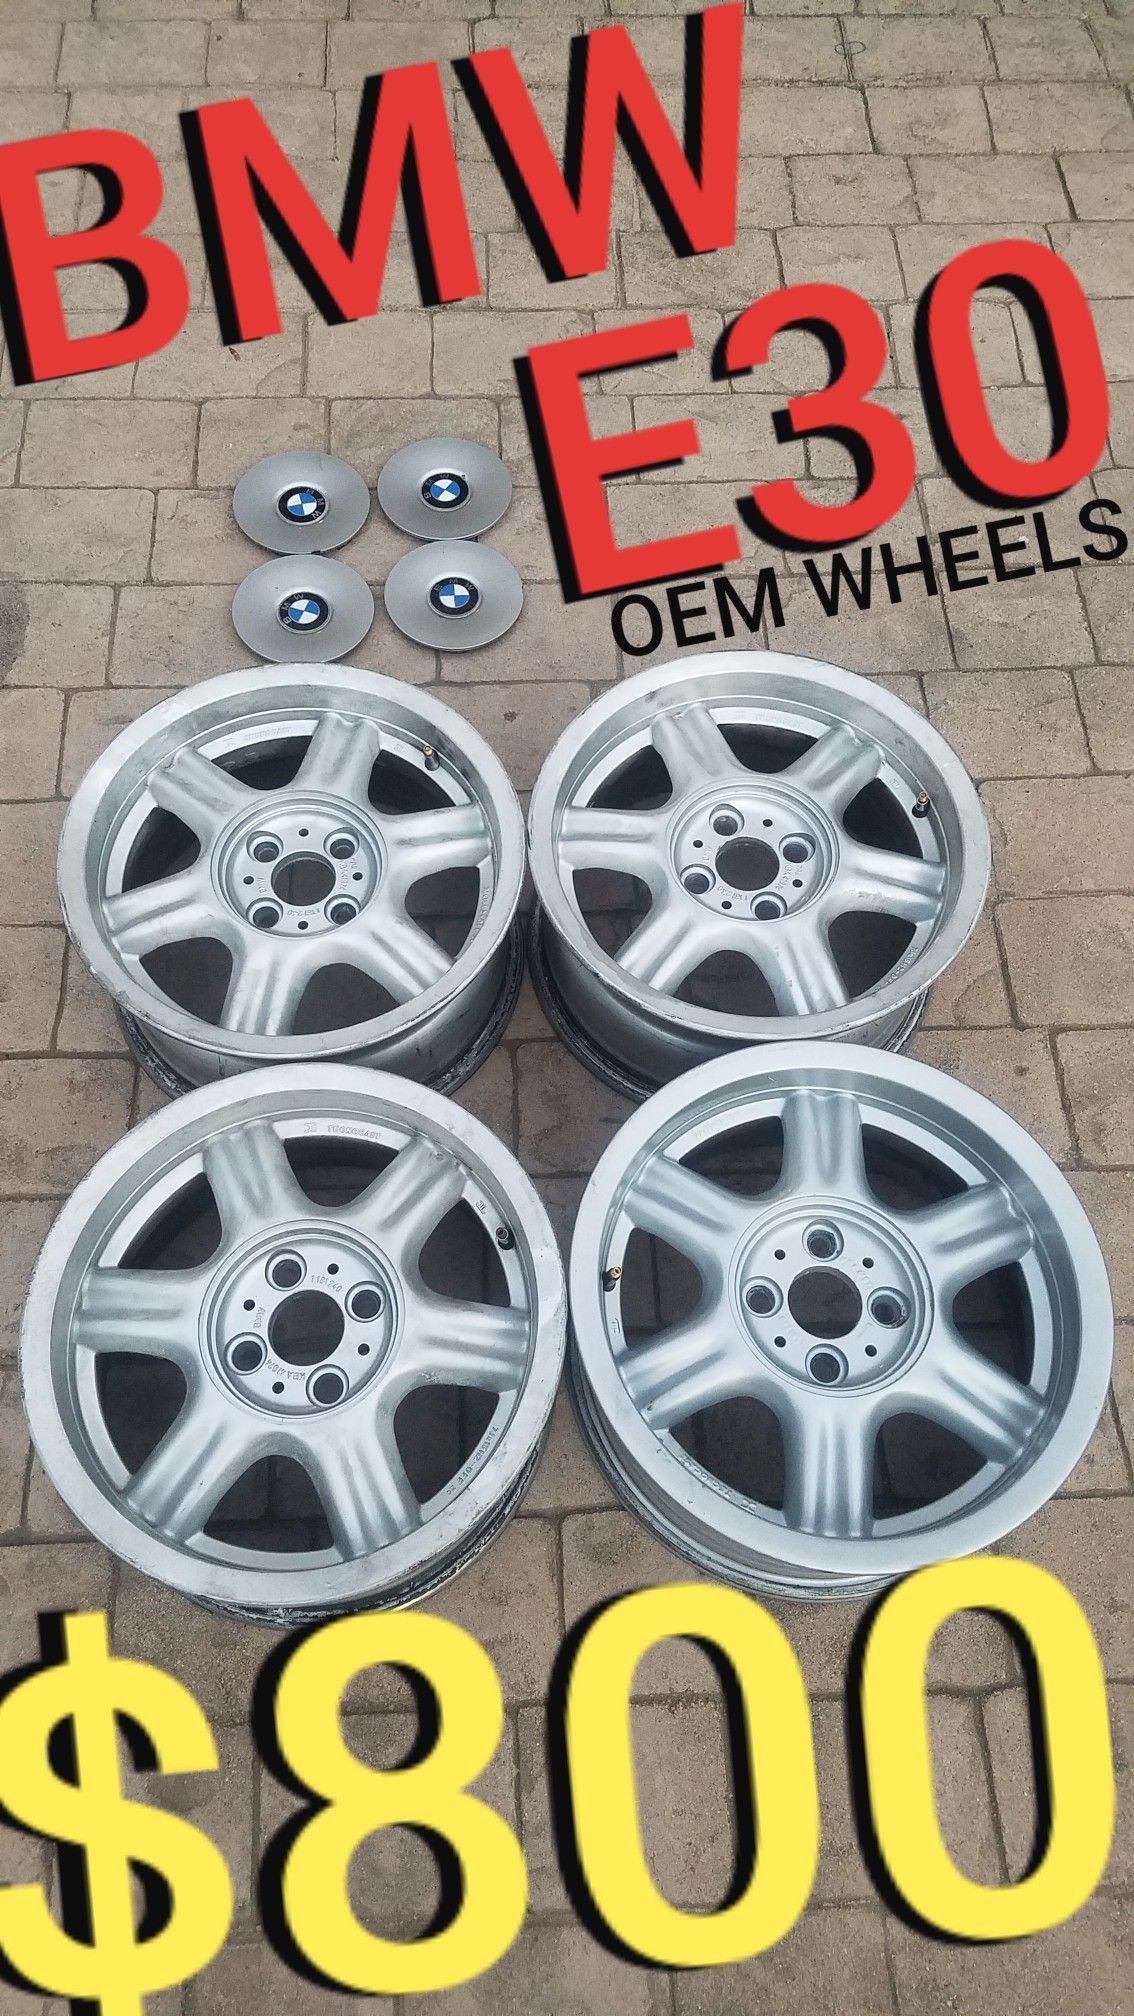 BMW e30 wheels - OEM - 15 inch